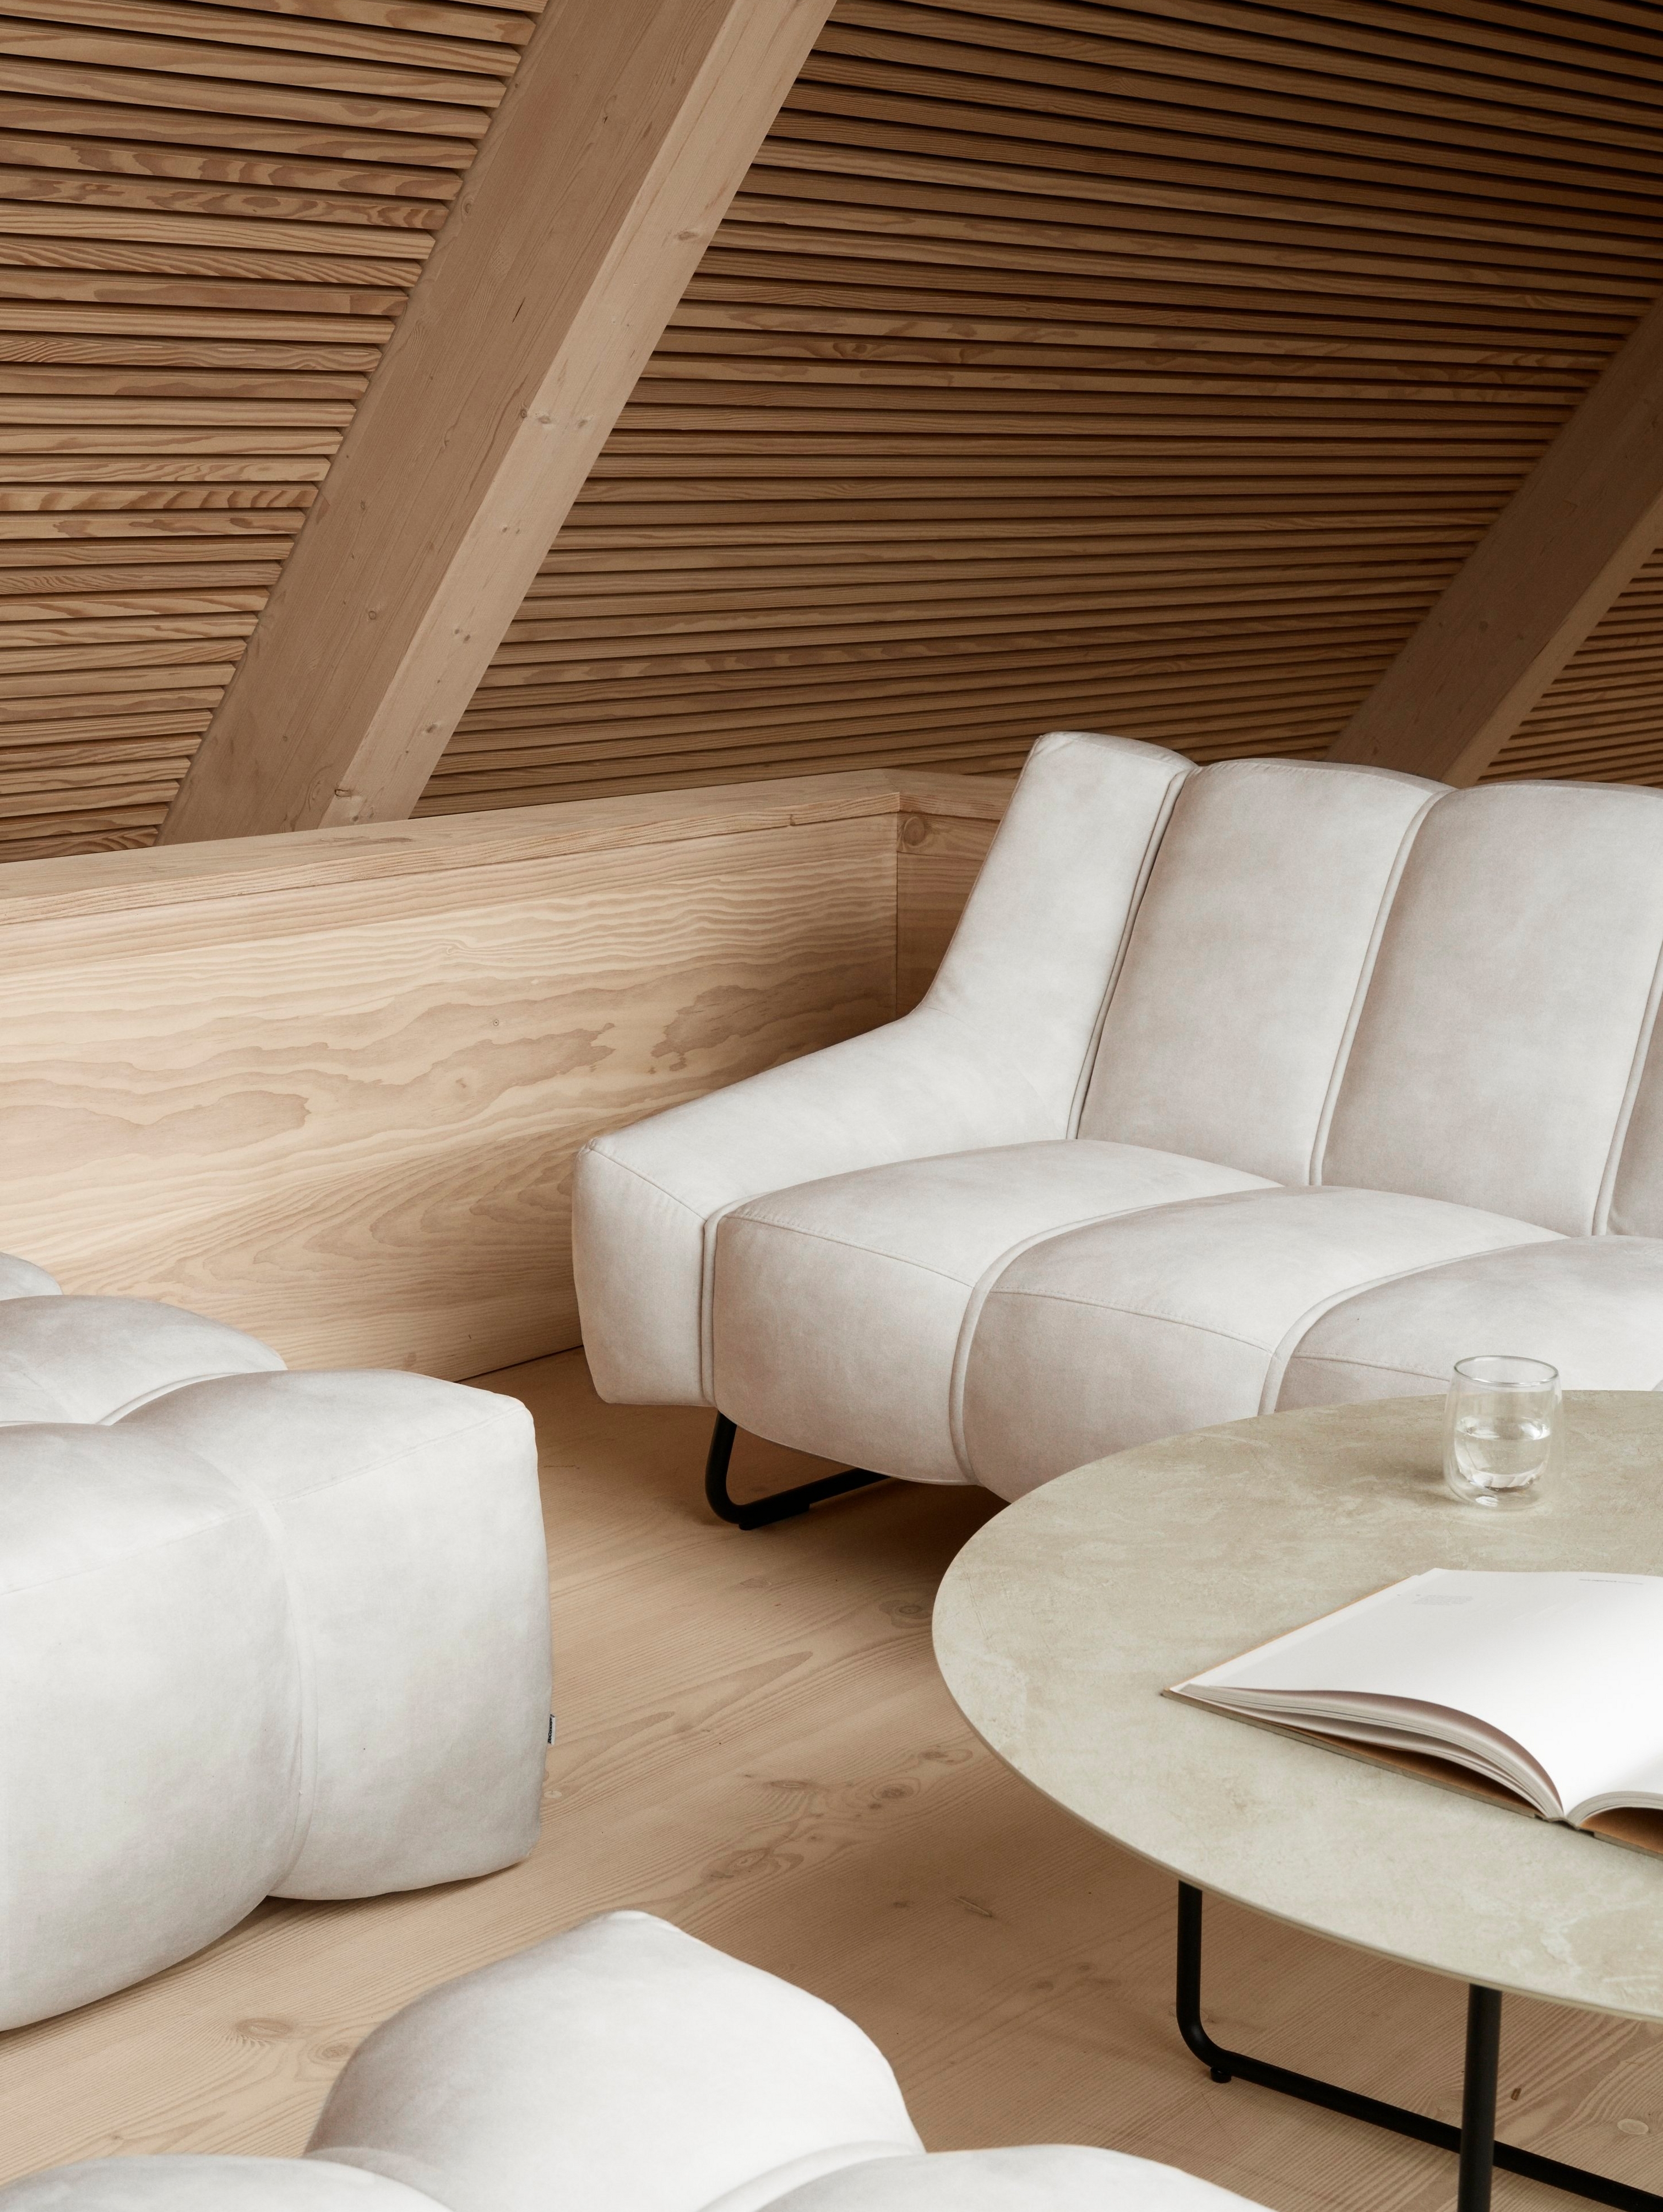 Wohnzimmer im skandinavischen Stil mit dem Nawabari Sofa und passenden Hockern.